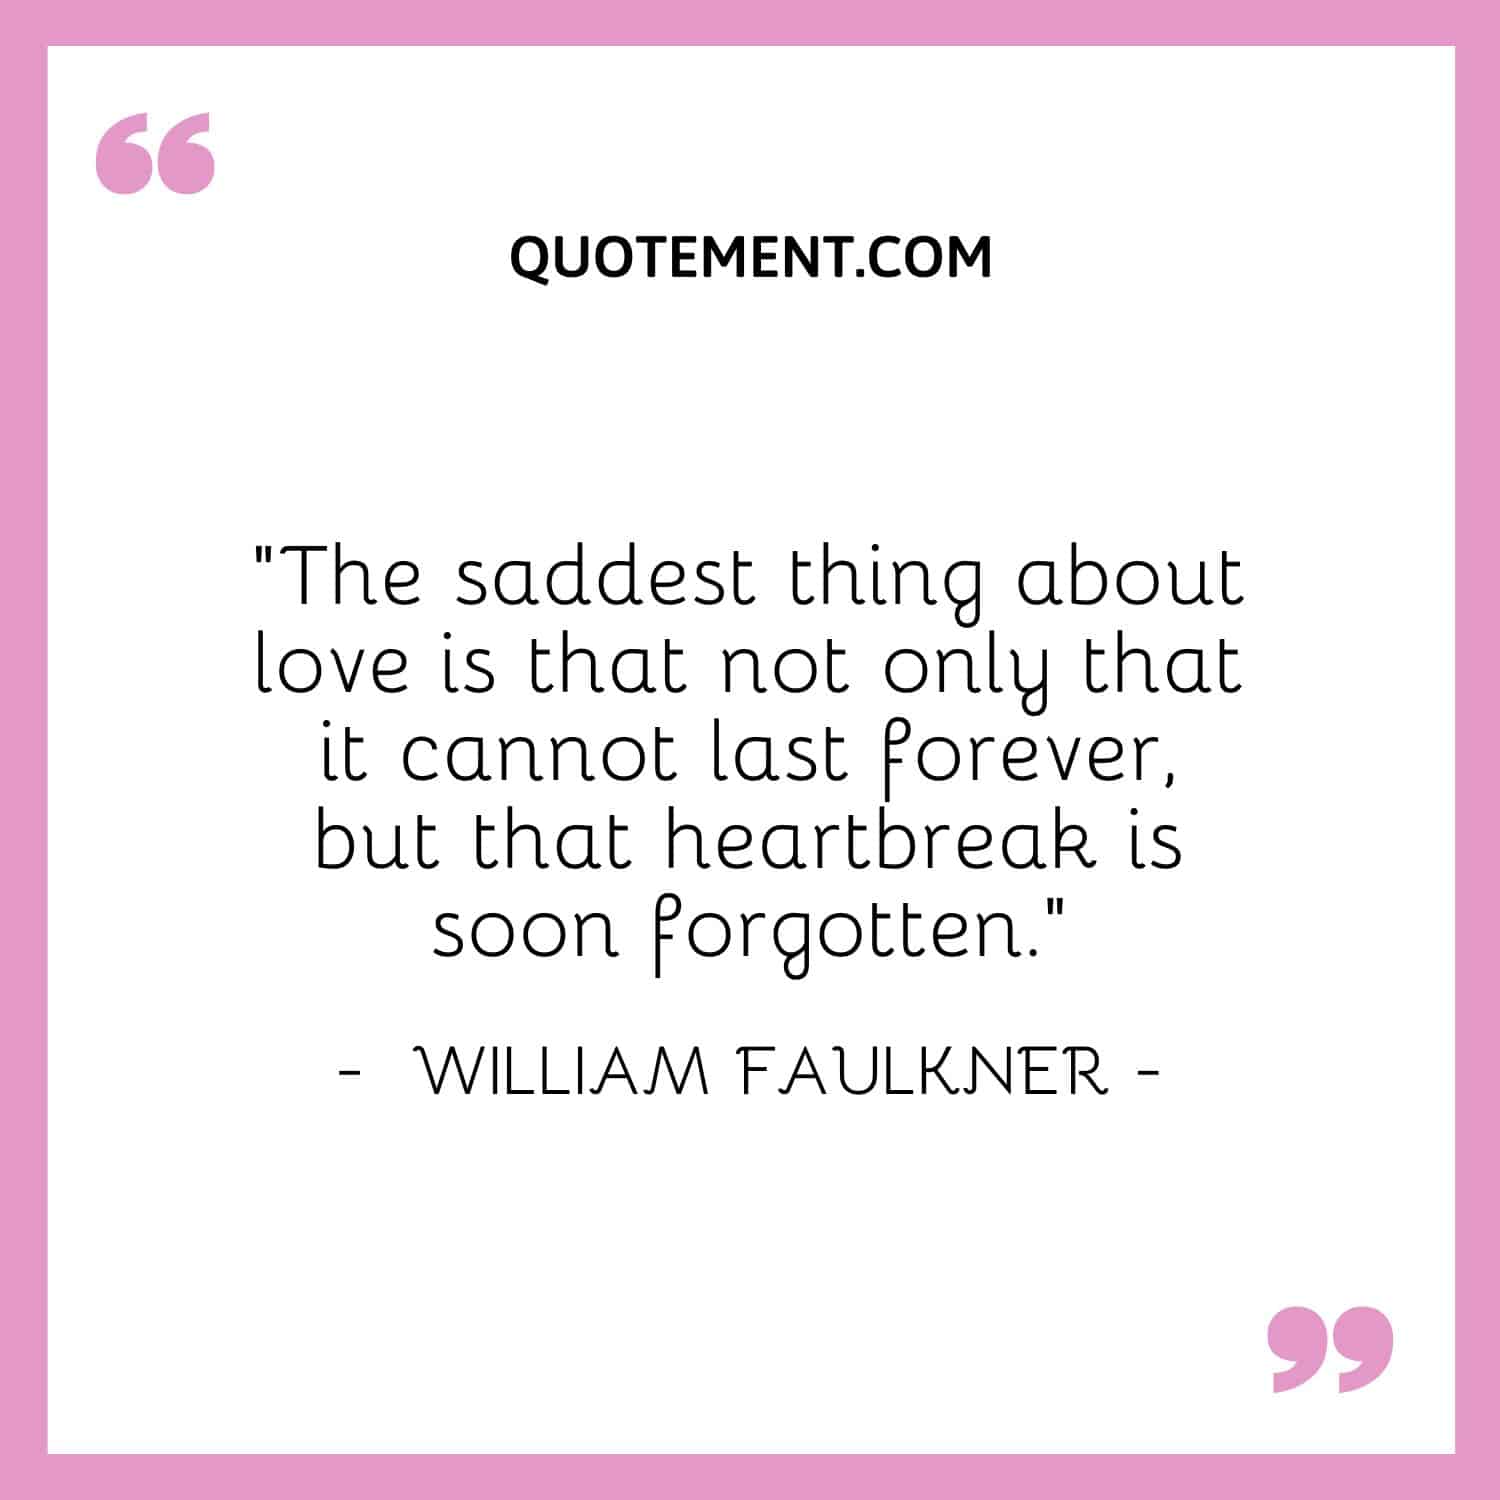 heartbreak is soon forgotten.